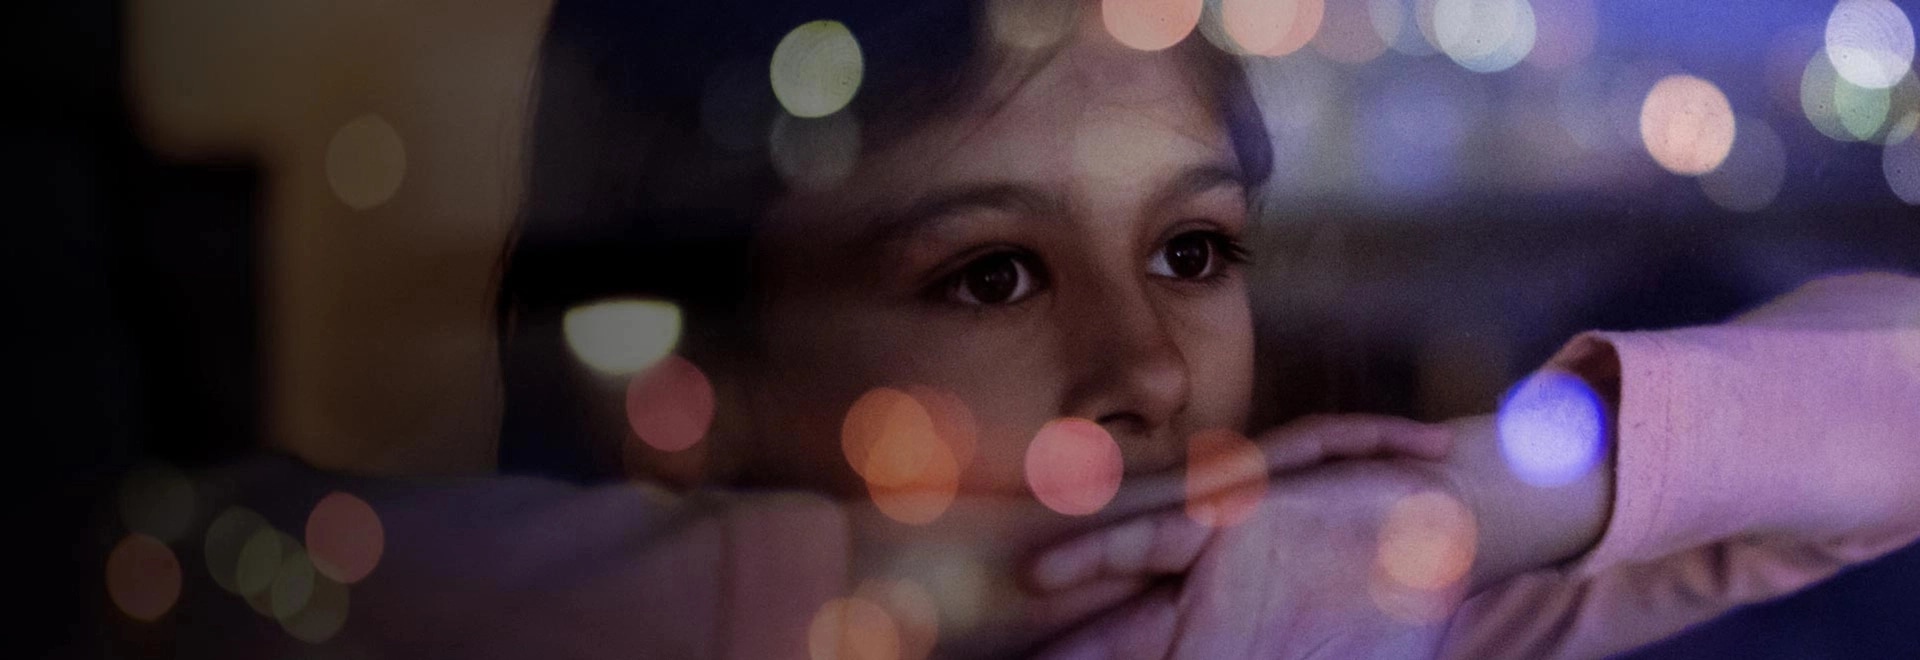 Un enfant regardant par la fenêtre la nuit